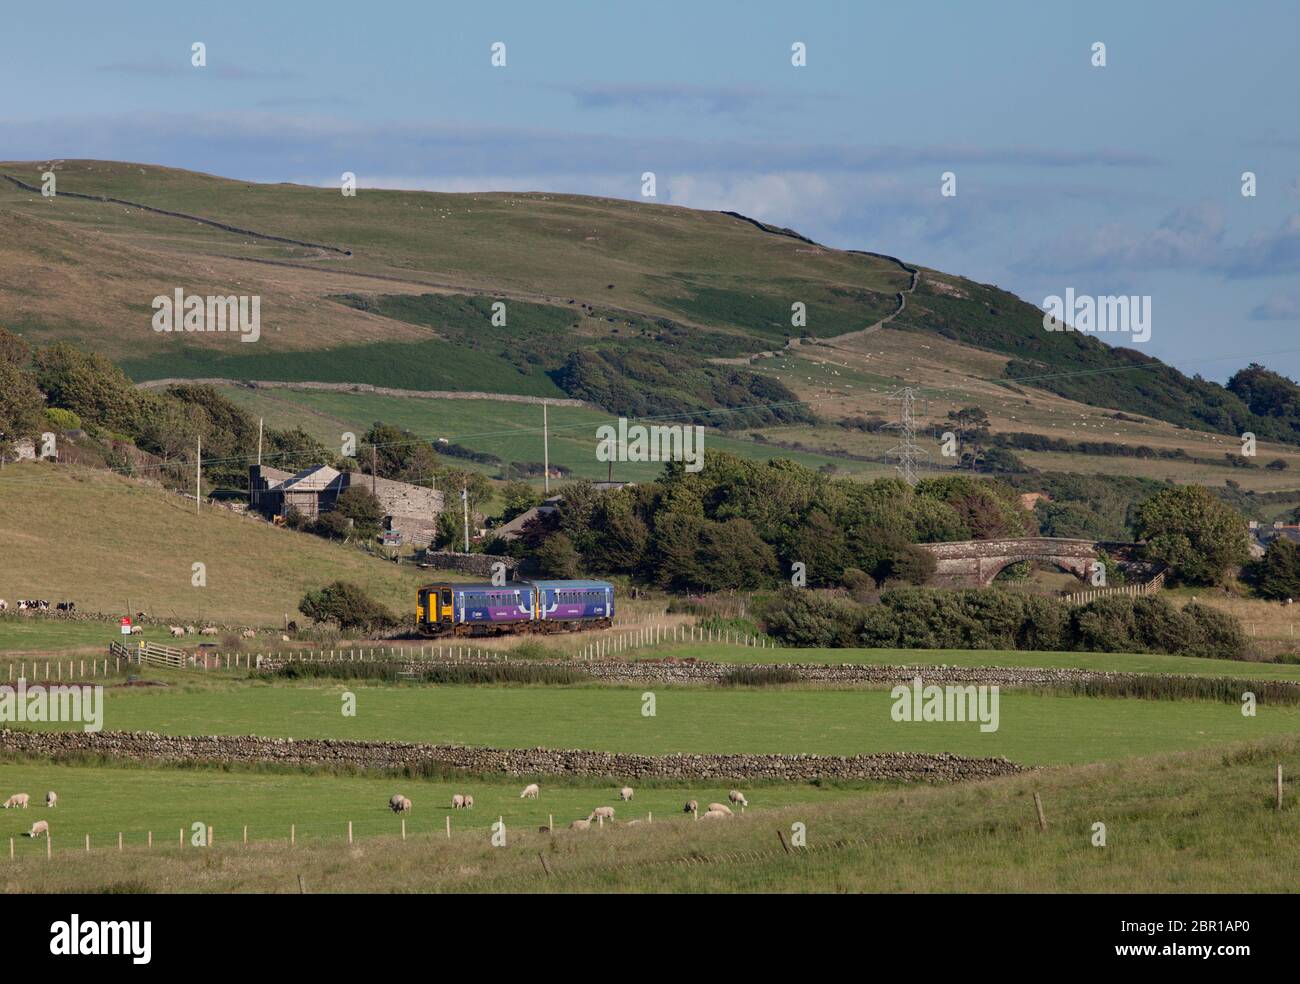 2 Nordbahn der Klasse 153 Einwagen-Sprinterzüge, die auf der malerischen Küstenbahn Cumbrian bei Silecroft durch die Landschaft fahren Stockfoto